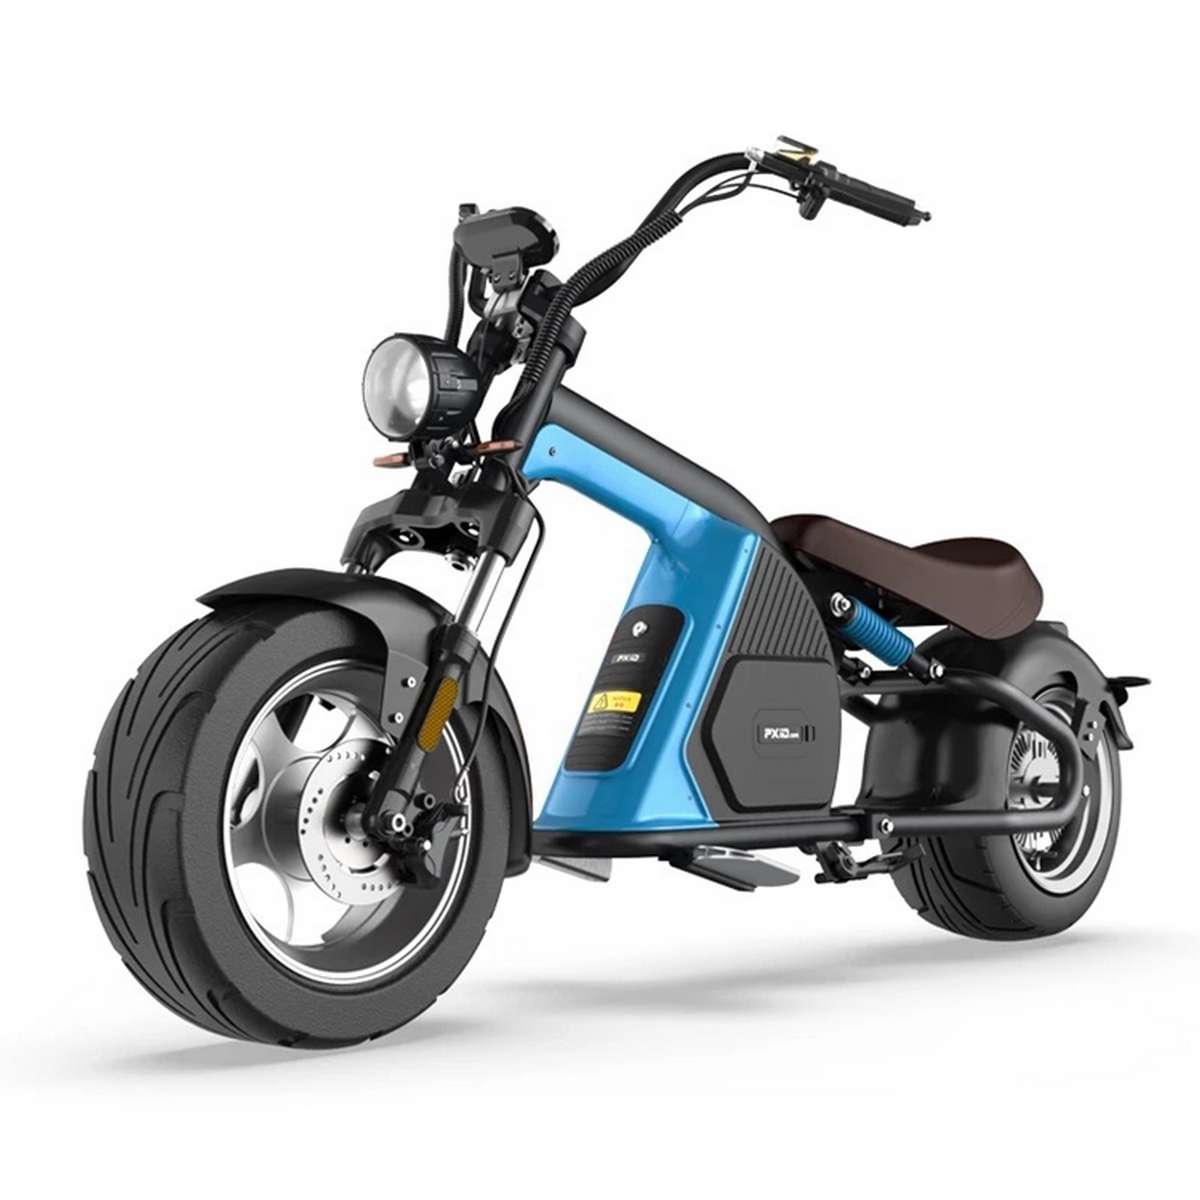 Ce scooter électrique aux allures de chopper sera-t-il disponible en France  ?